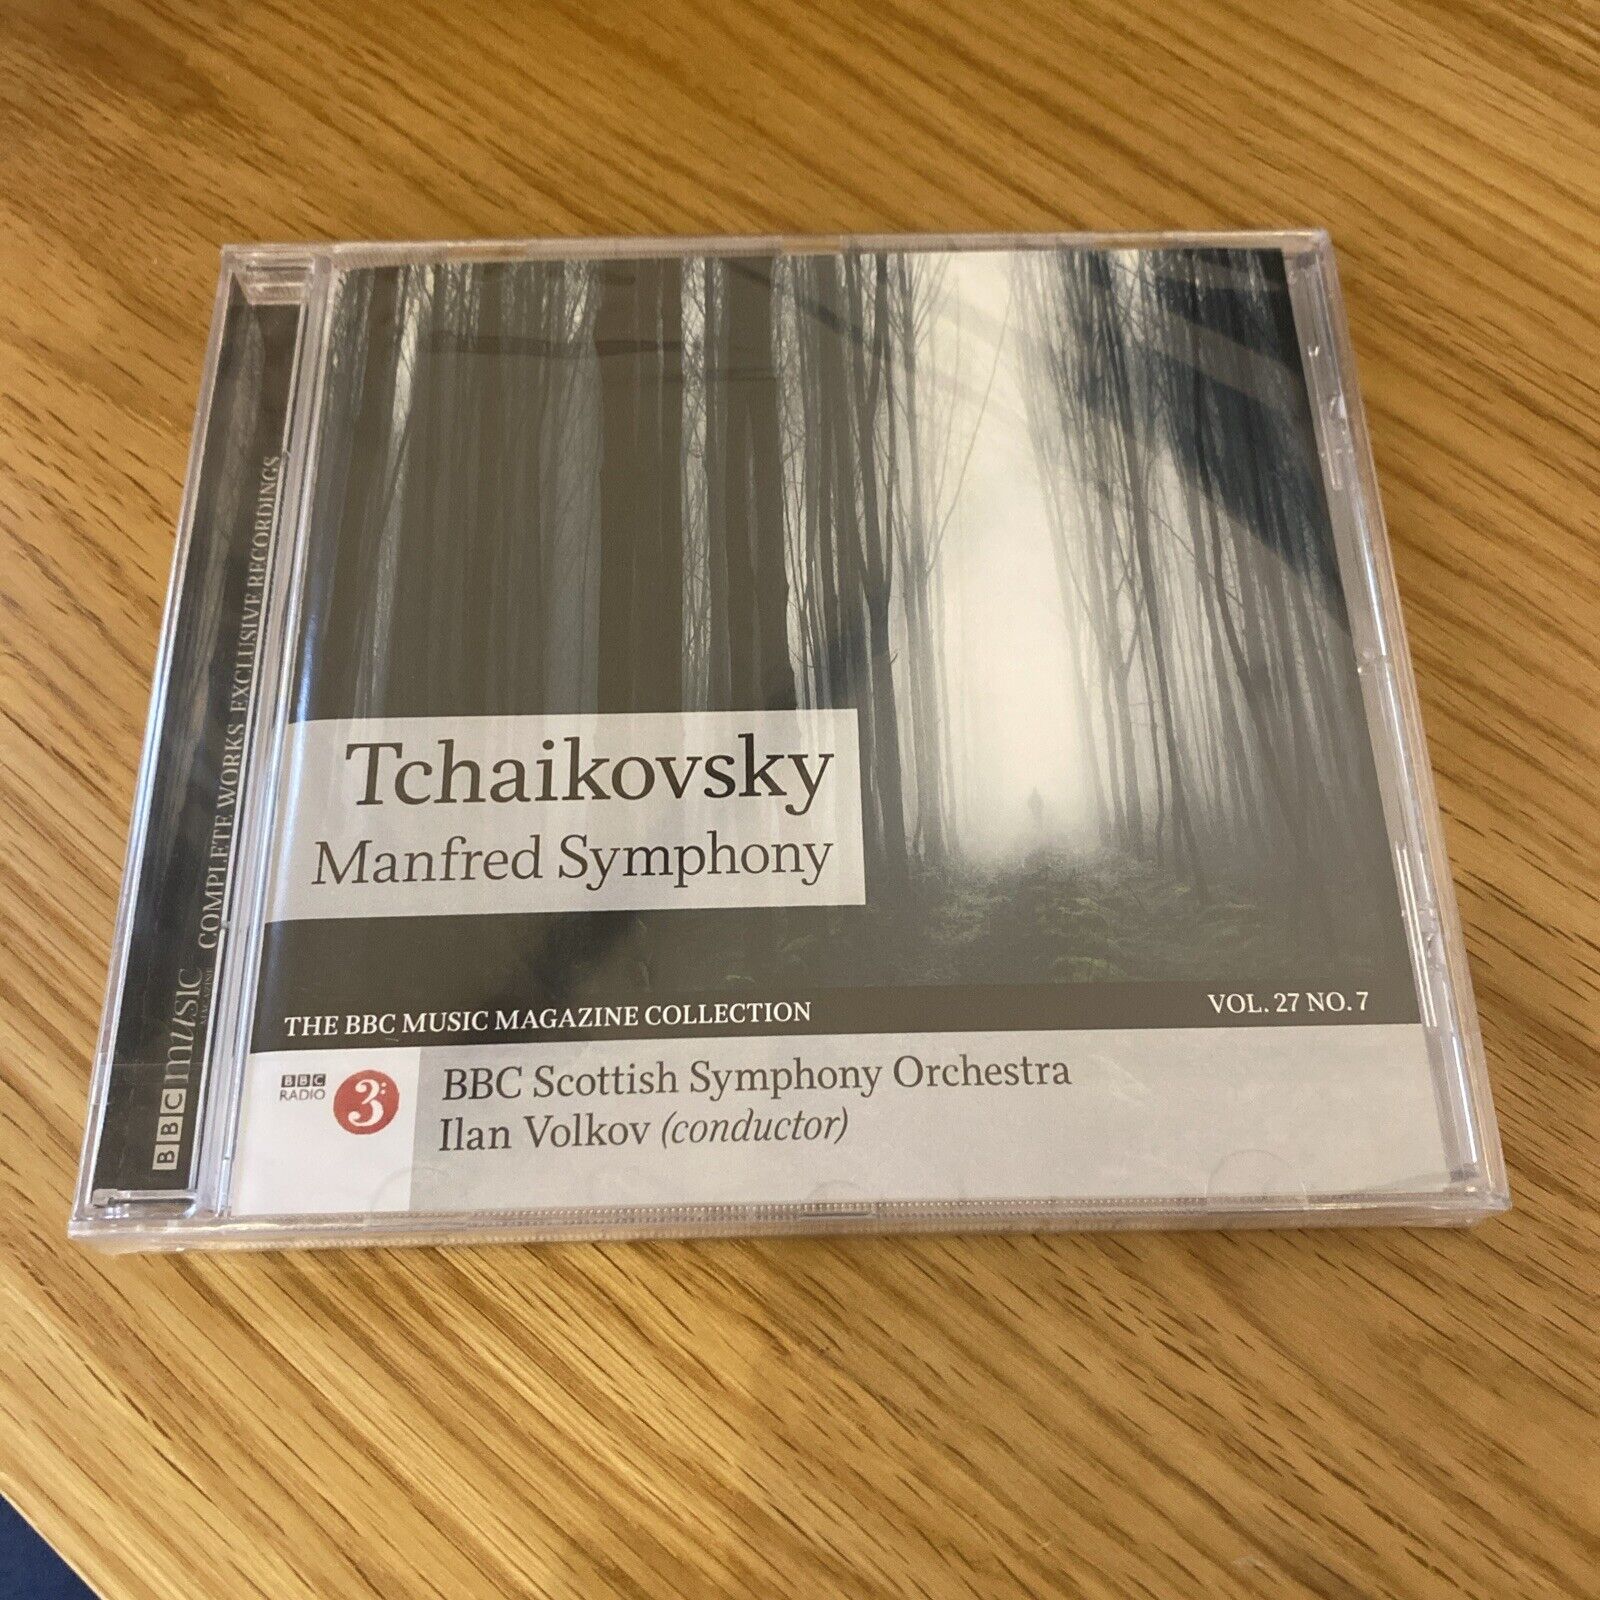 CD Tchaikovsky Manfred symphony BBC Music  magazine Still In Shrink Wrap